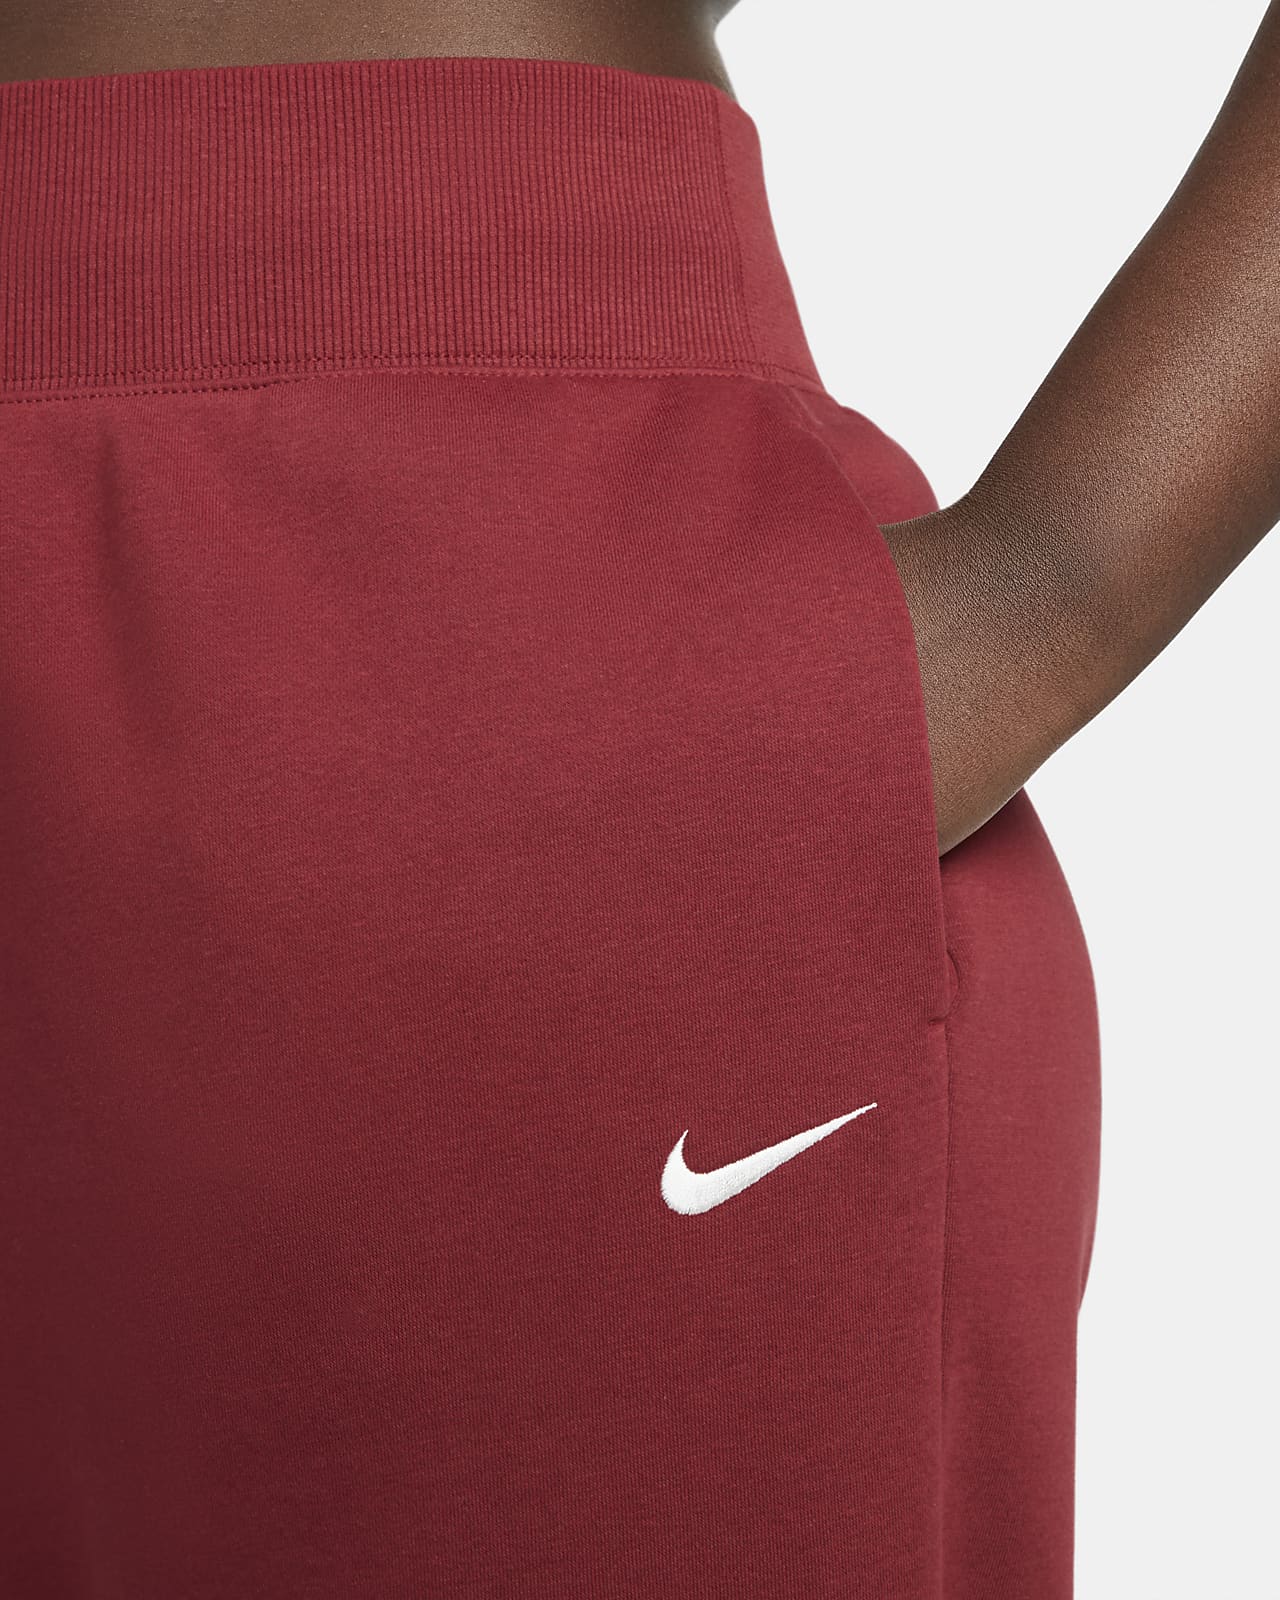 Pantalon de survêtement taille haute oversize Nike Sportswear Phoenix pour Femme (grande taille). FR